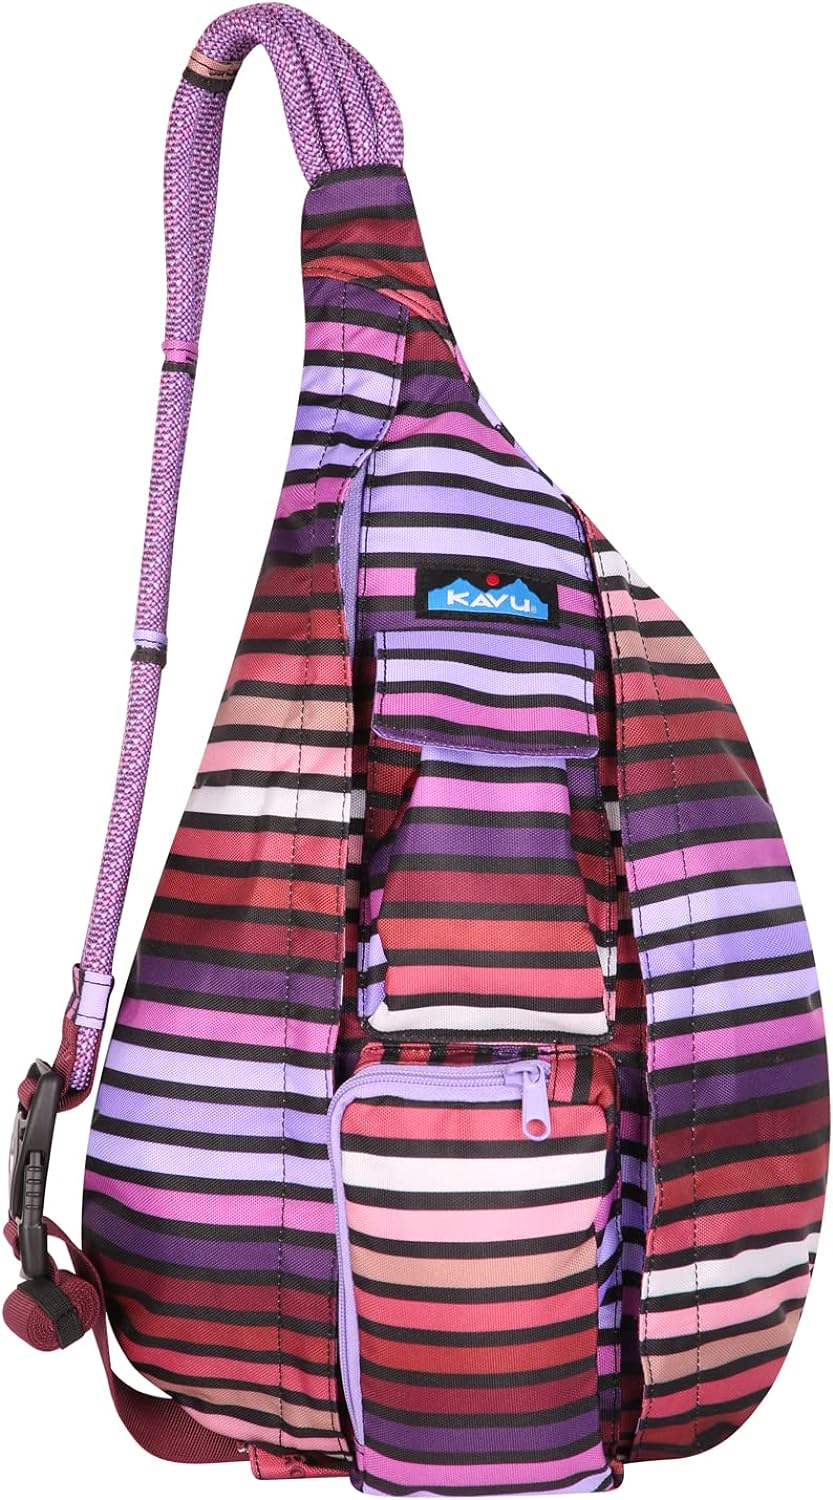 KAVU Original Rope Bag Sling Pack with Adjustable Rope Shoulder